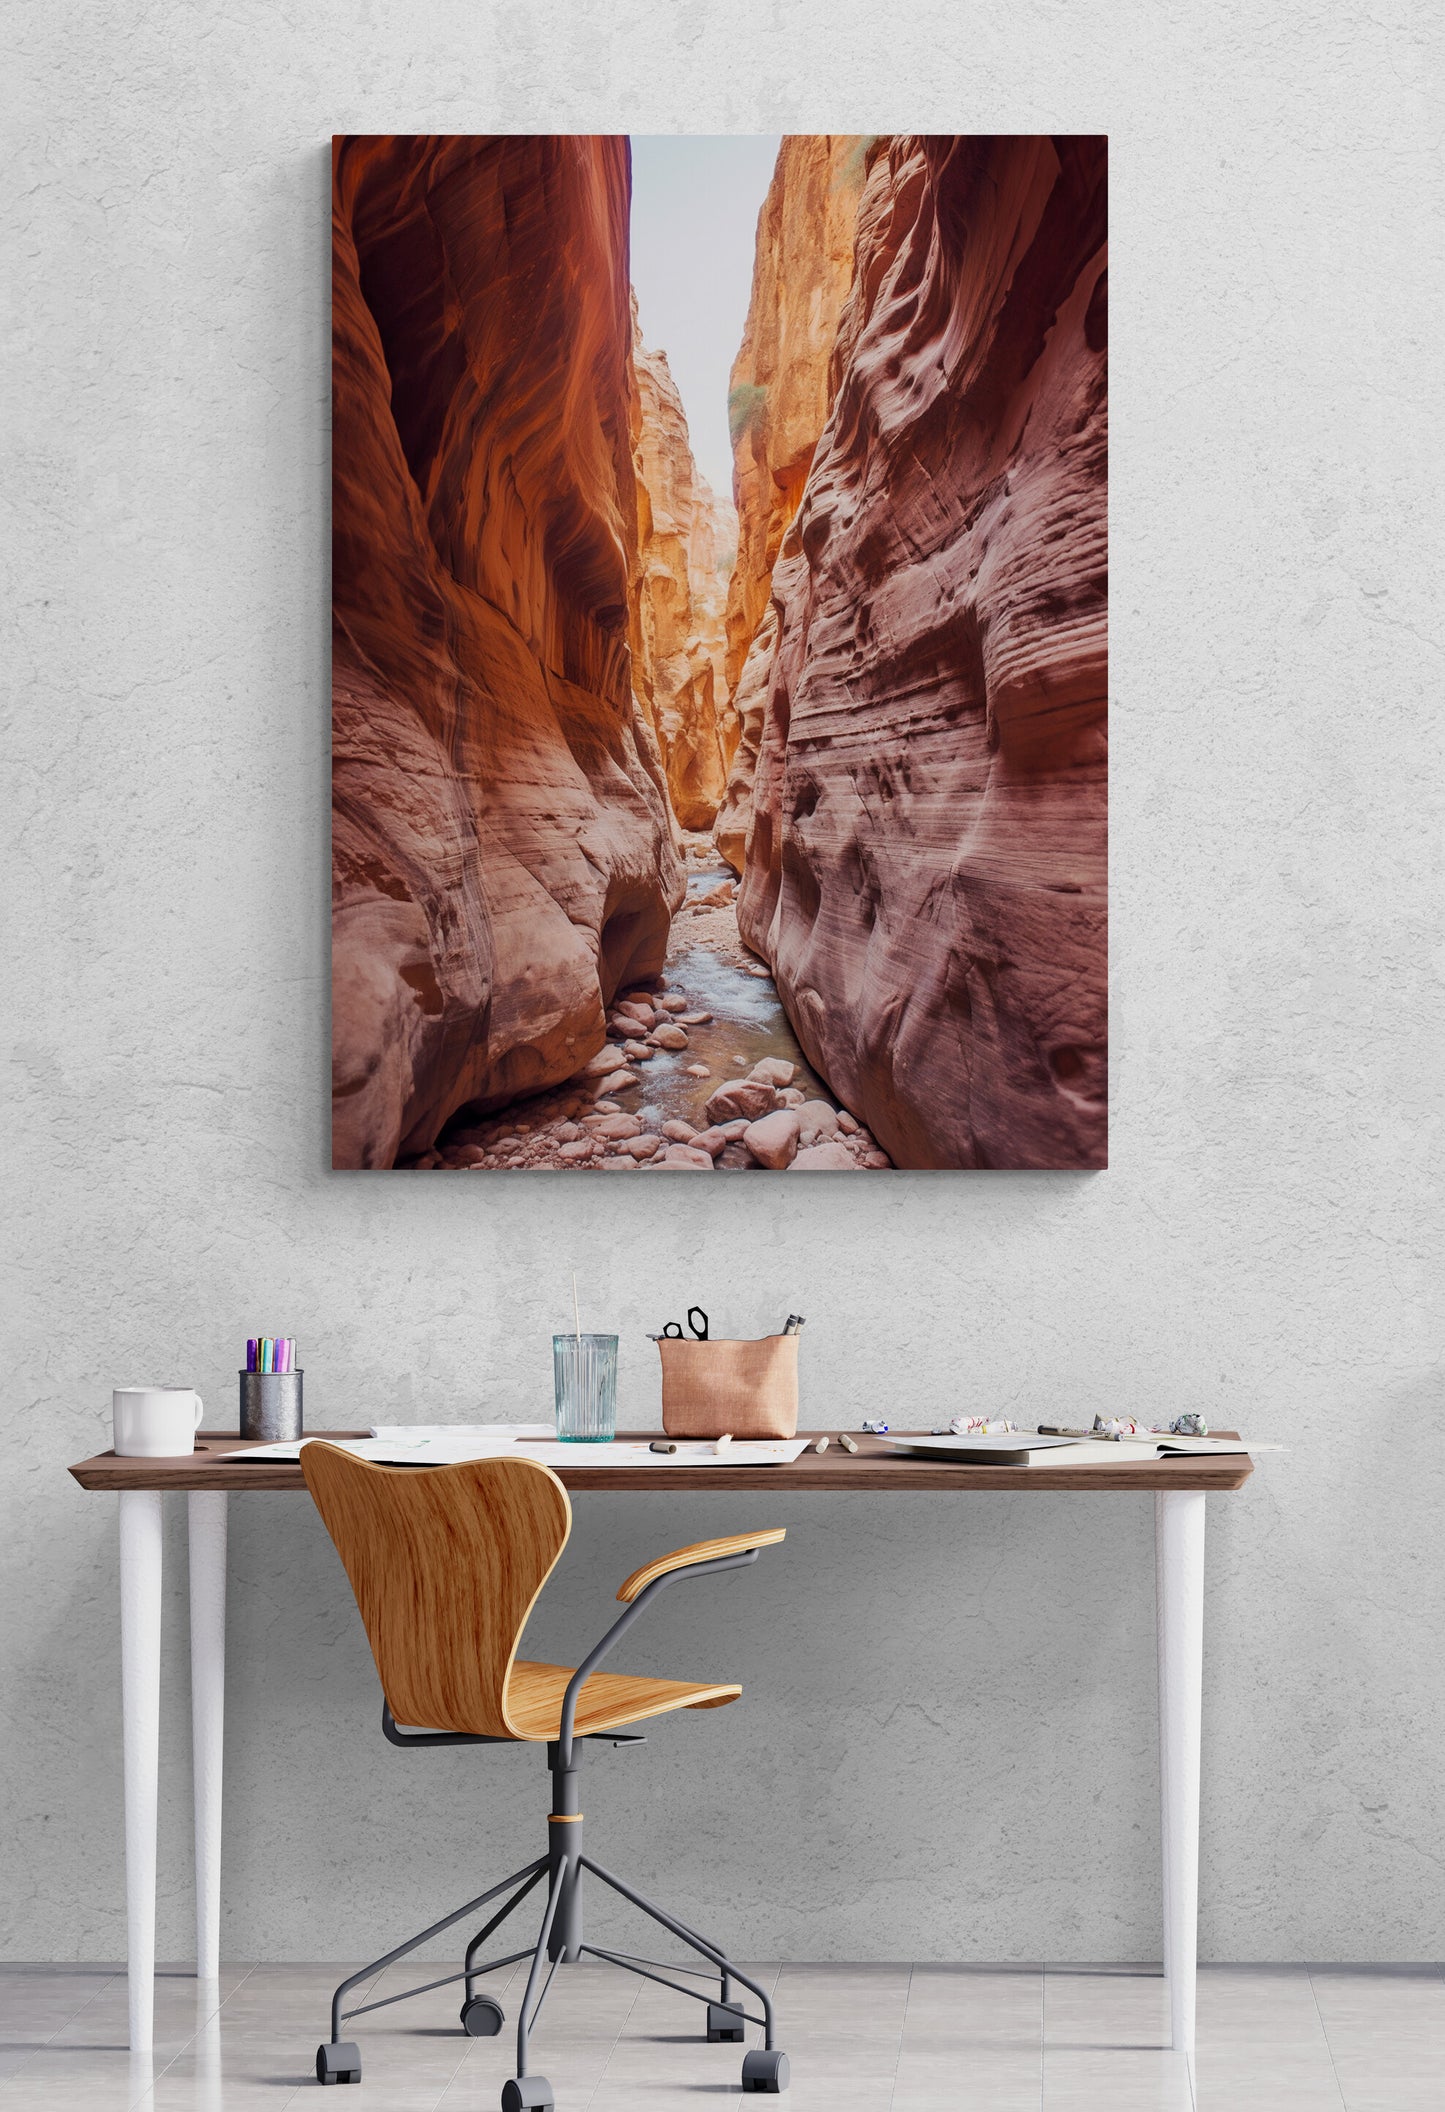 un magnifique paysage de canyon est accroché au mur au-dessus d'un bureau moderne. Le bureau est orné de divers accessoires, notamment une tasse, des stylos et une paire de lunettes. Une chaise en bois au design élégant est placée devant le bureau.